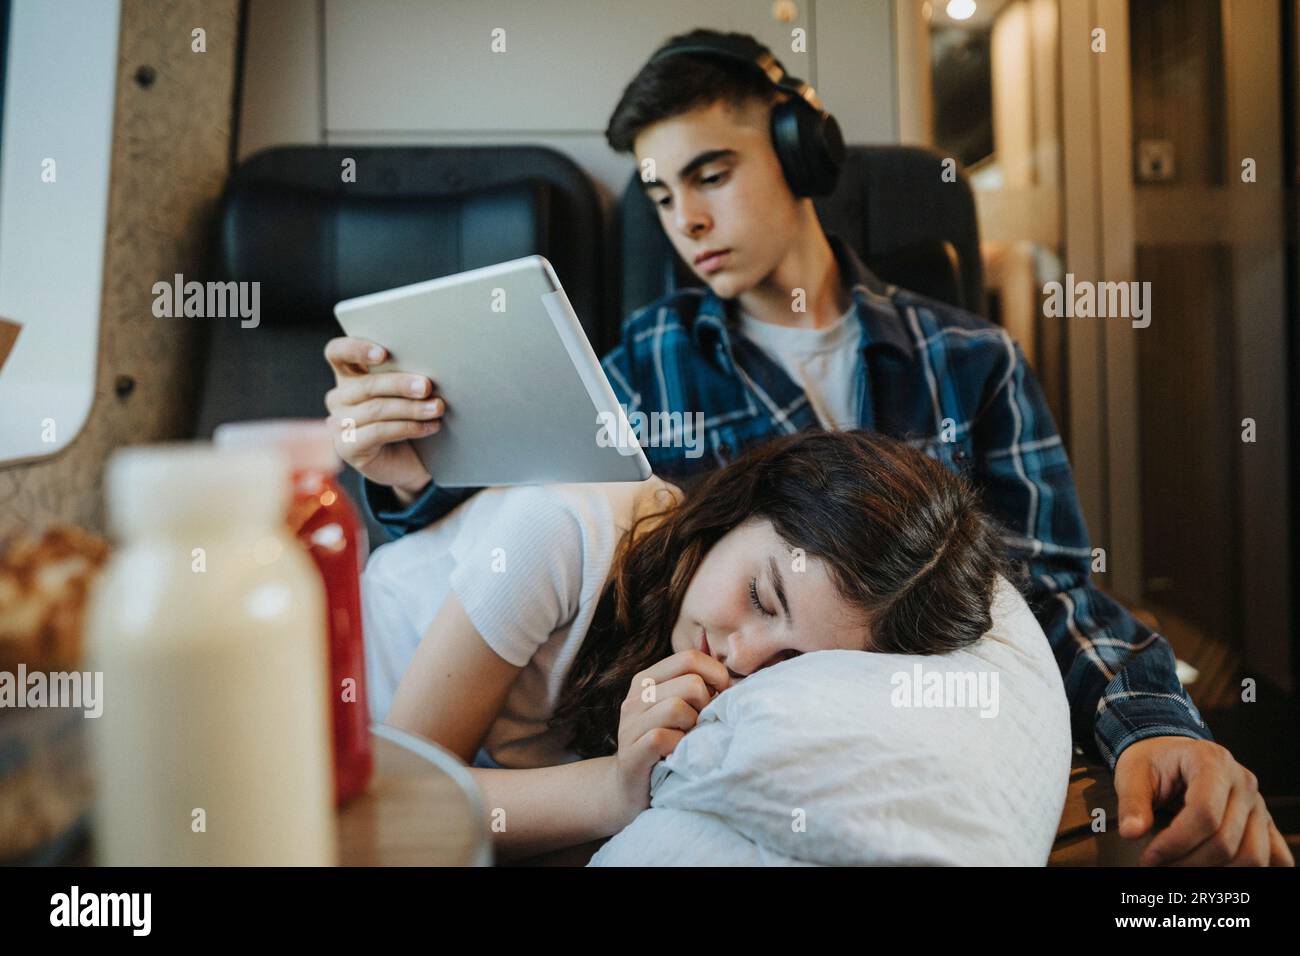 Junge mit Tablet-PC und Schwester, die im Zug ein Nickerchen macht Stockfoto